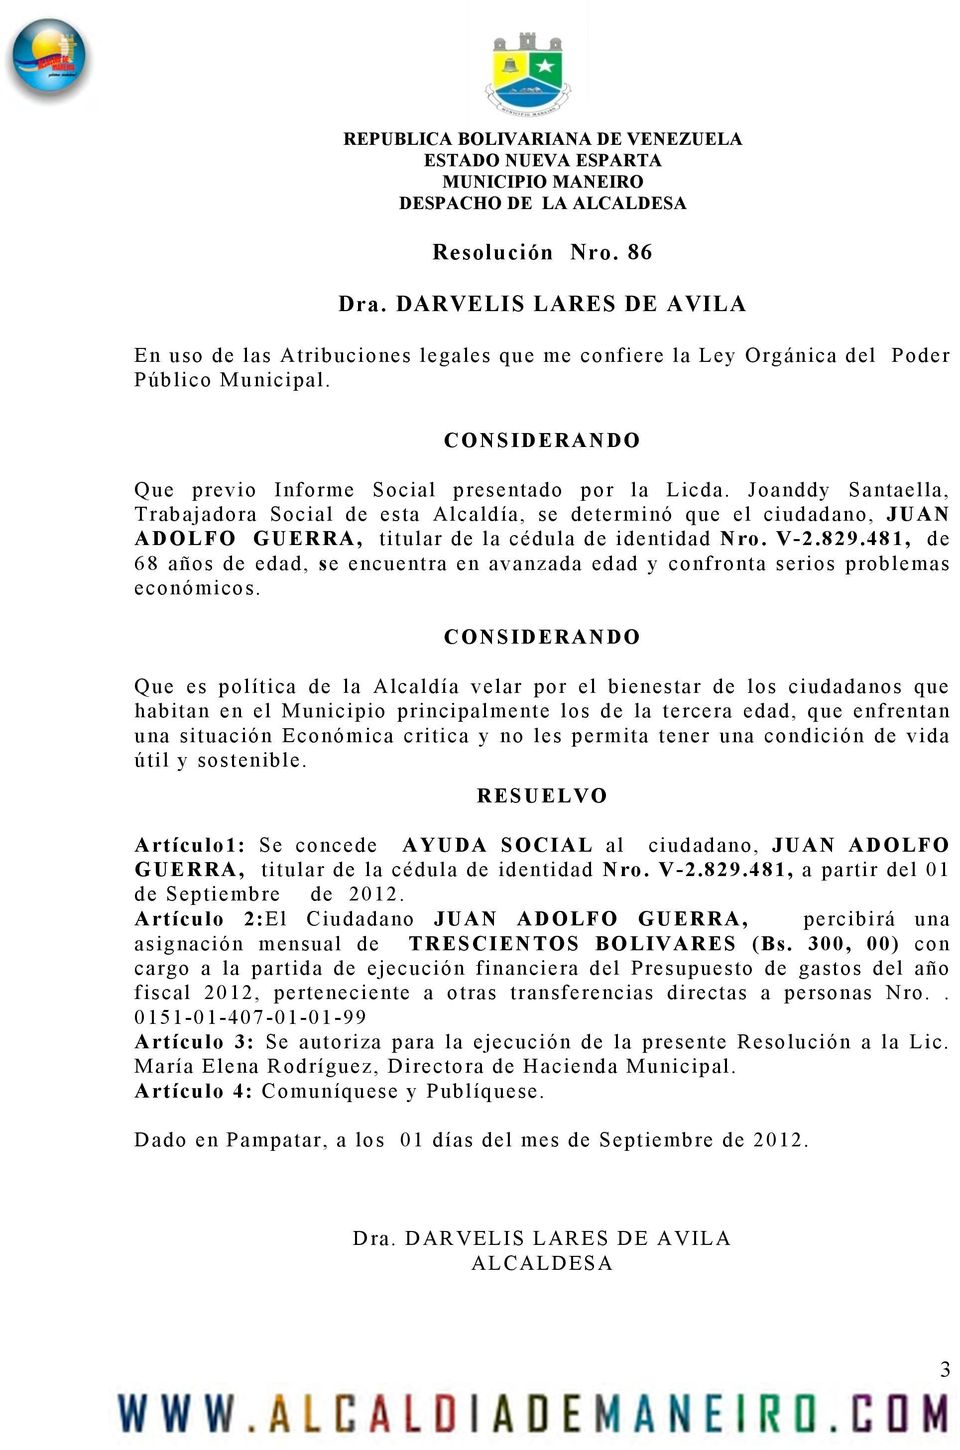 Joanddy Santaella, Trabajadora Social de esta Alcaldía, se determinó que el ciudadano, JUAN ADOLFO GUERRA, titular de la cédula de identidad Nro. V-2.829.